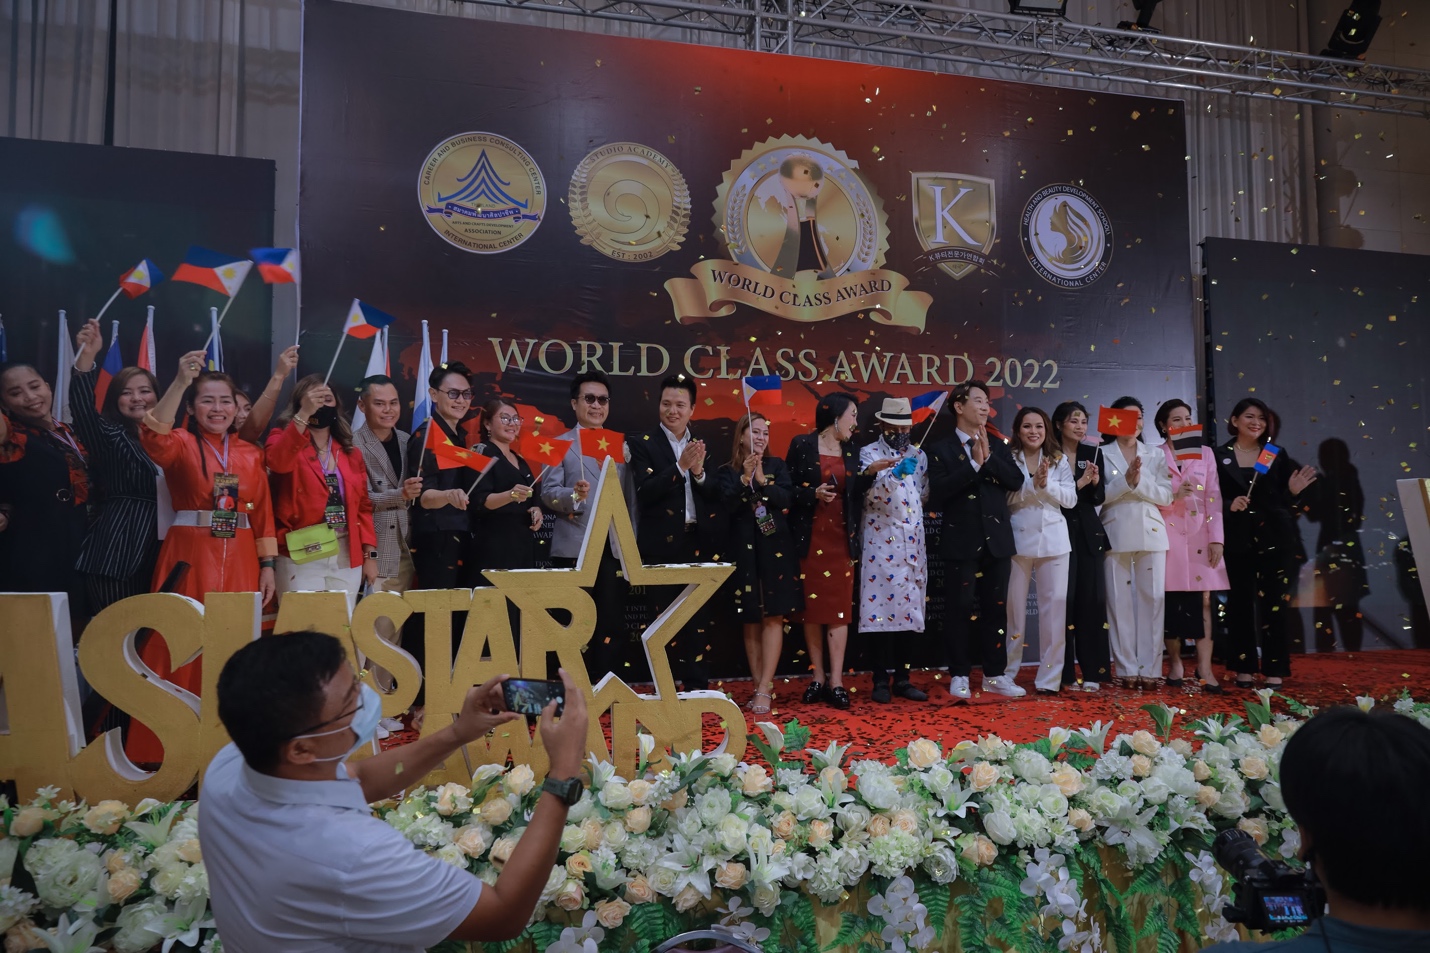 Thương hiệu Lurcinn nhận giải thưởng mỹ phẩm quốc tế tại Thái Lan 2022 - Ảnh 4.